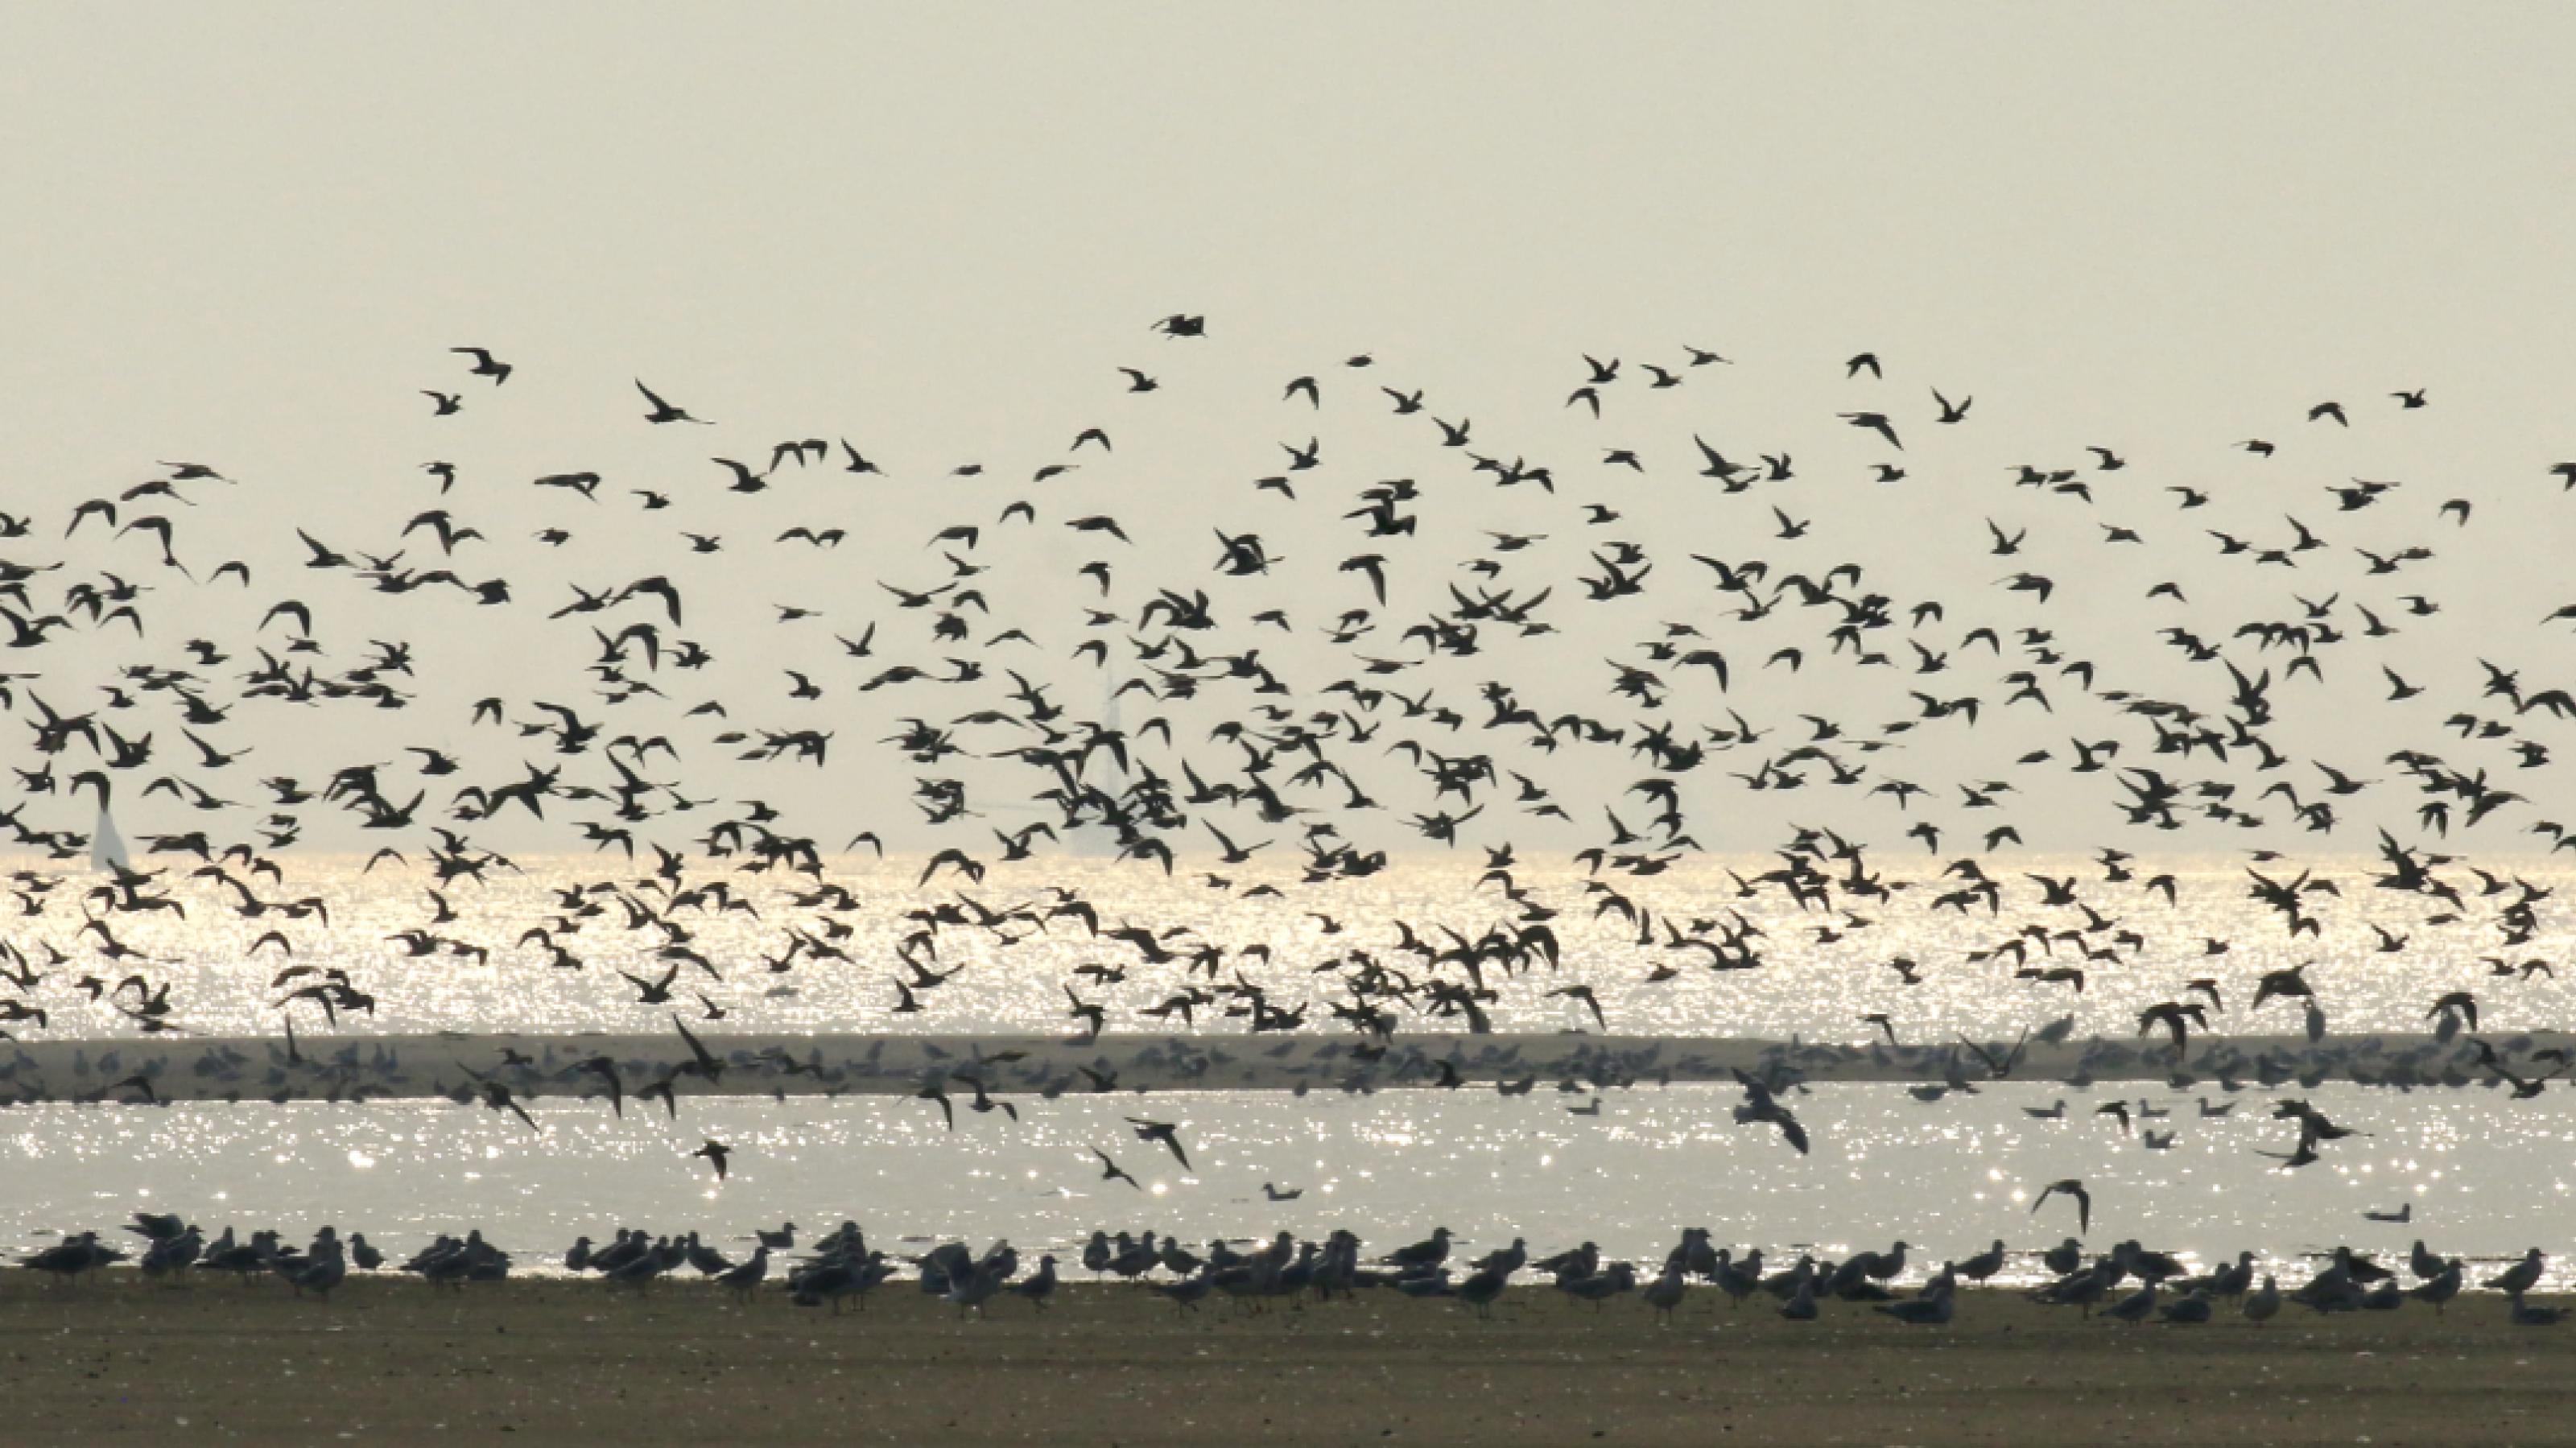 Vögel sitzen am Strand, darüber die Silhouetten von Vögeln in einem großen Schwarm